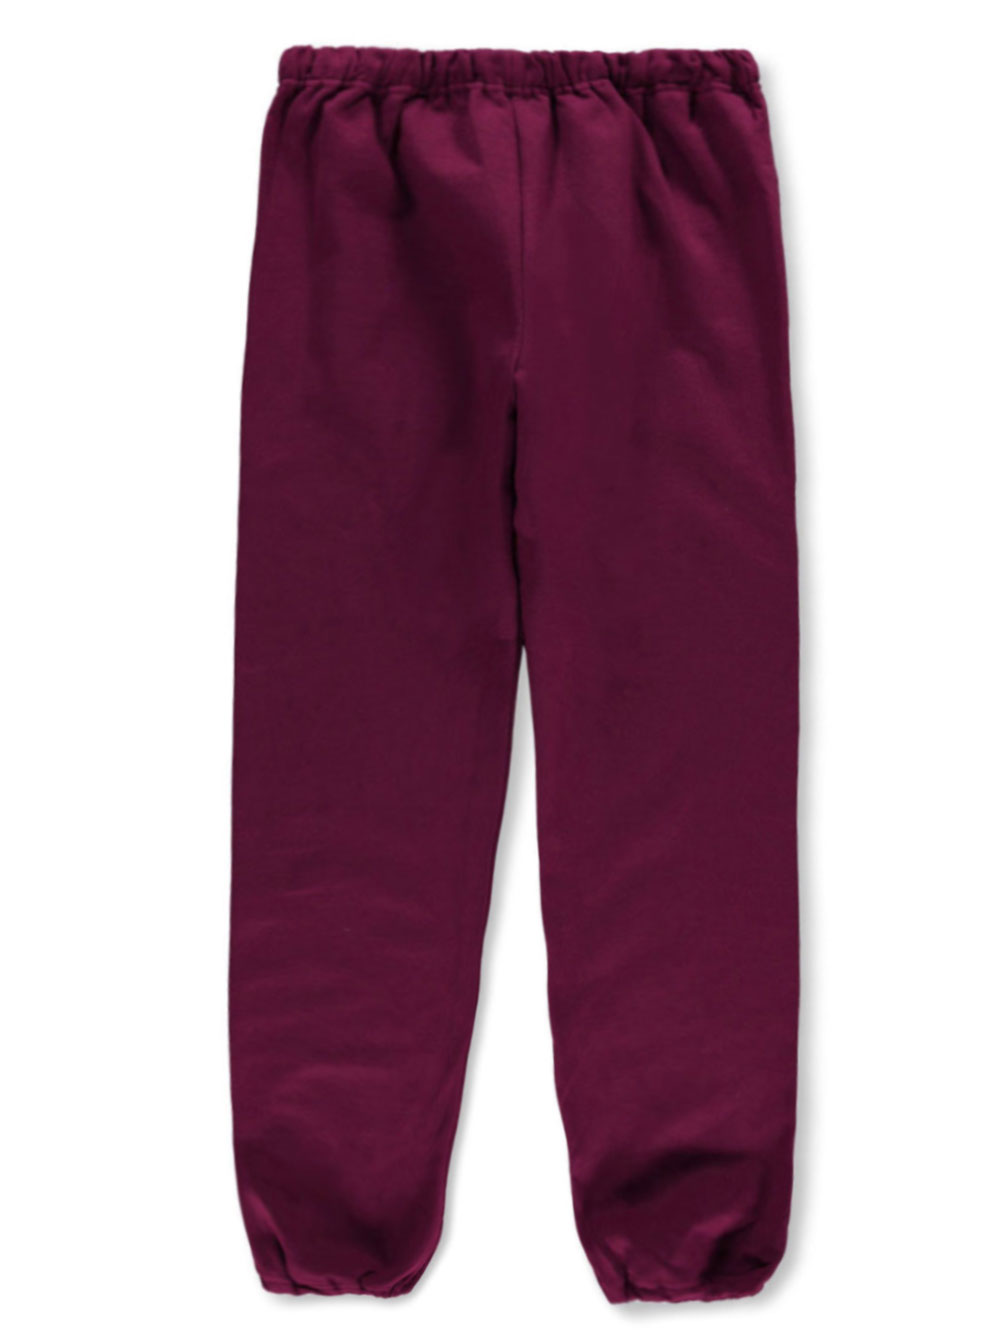 Jerzees Girls Jerzees Basic Fleece Sweatpants (Adult Sizes S - XXL) - burgundy, xl